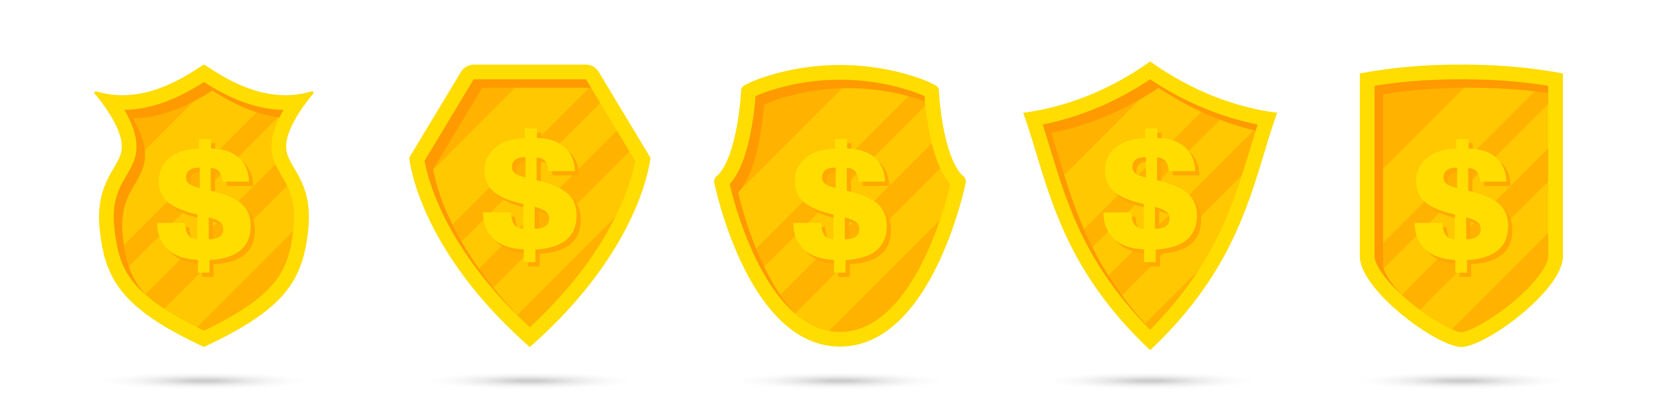 盾牌一套不同的金色盾牌和美元图标硬币货币支付